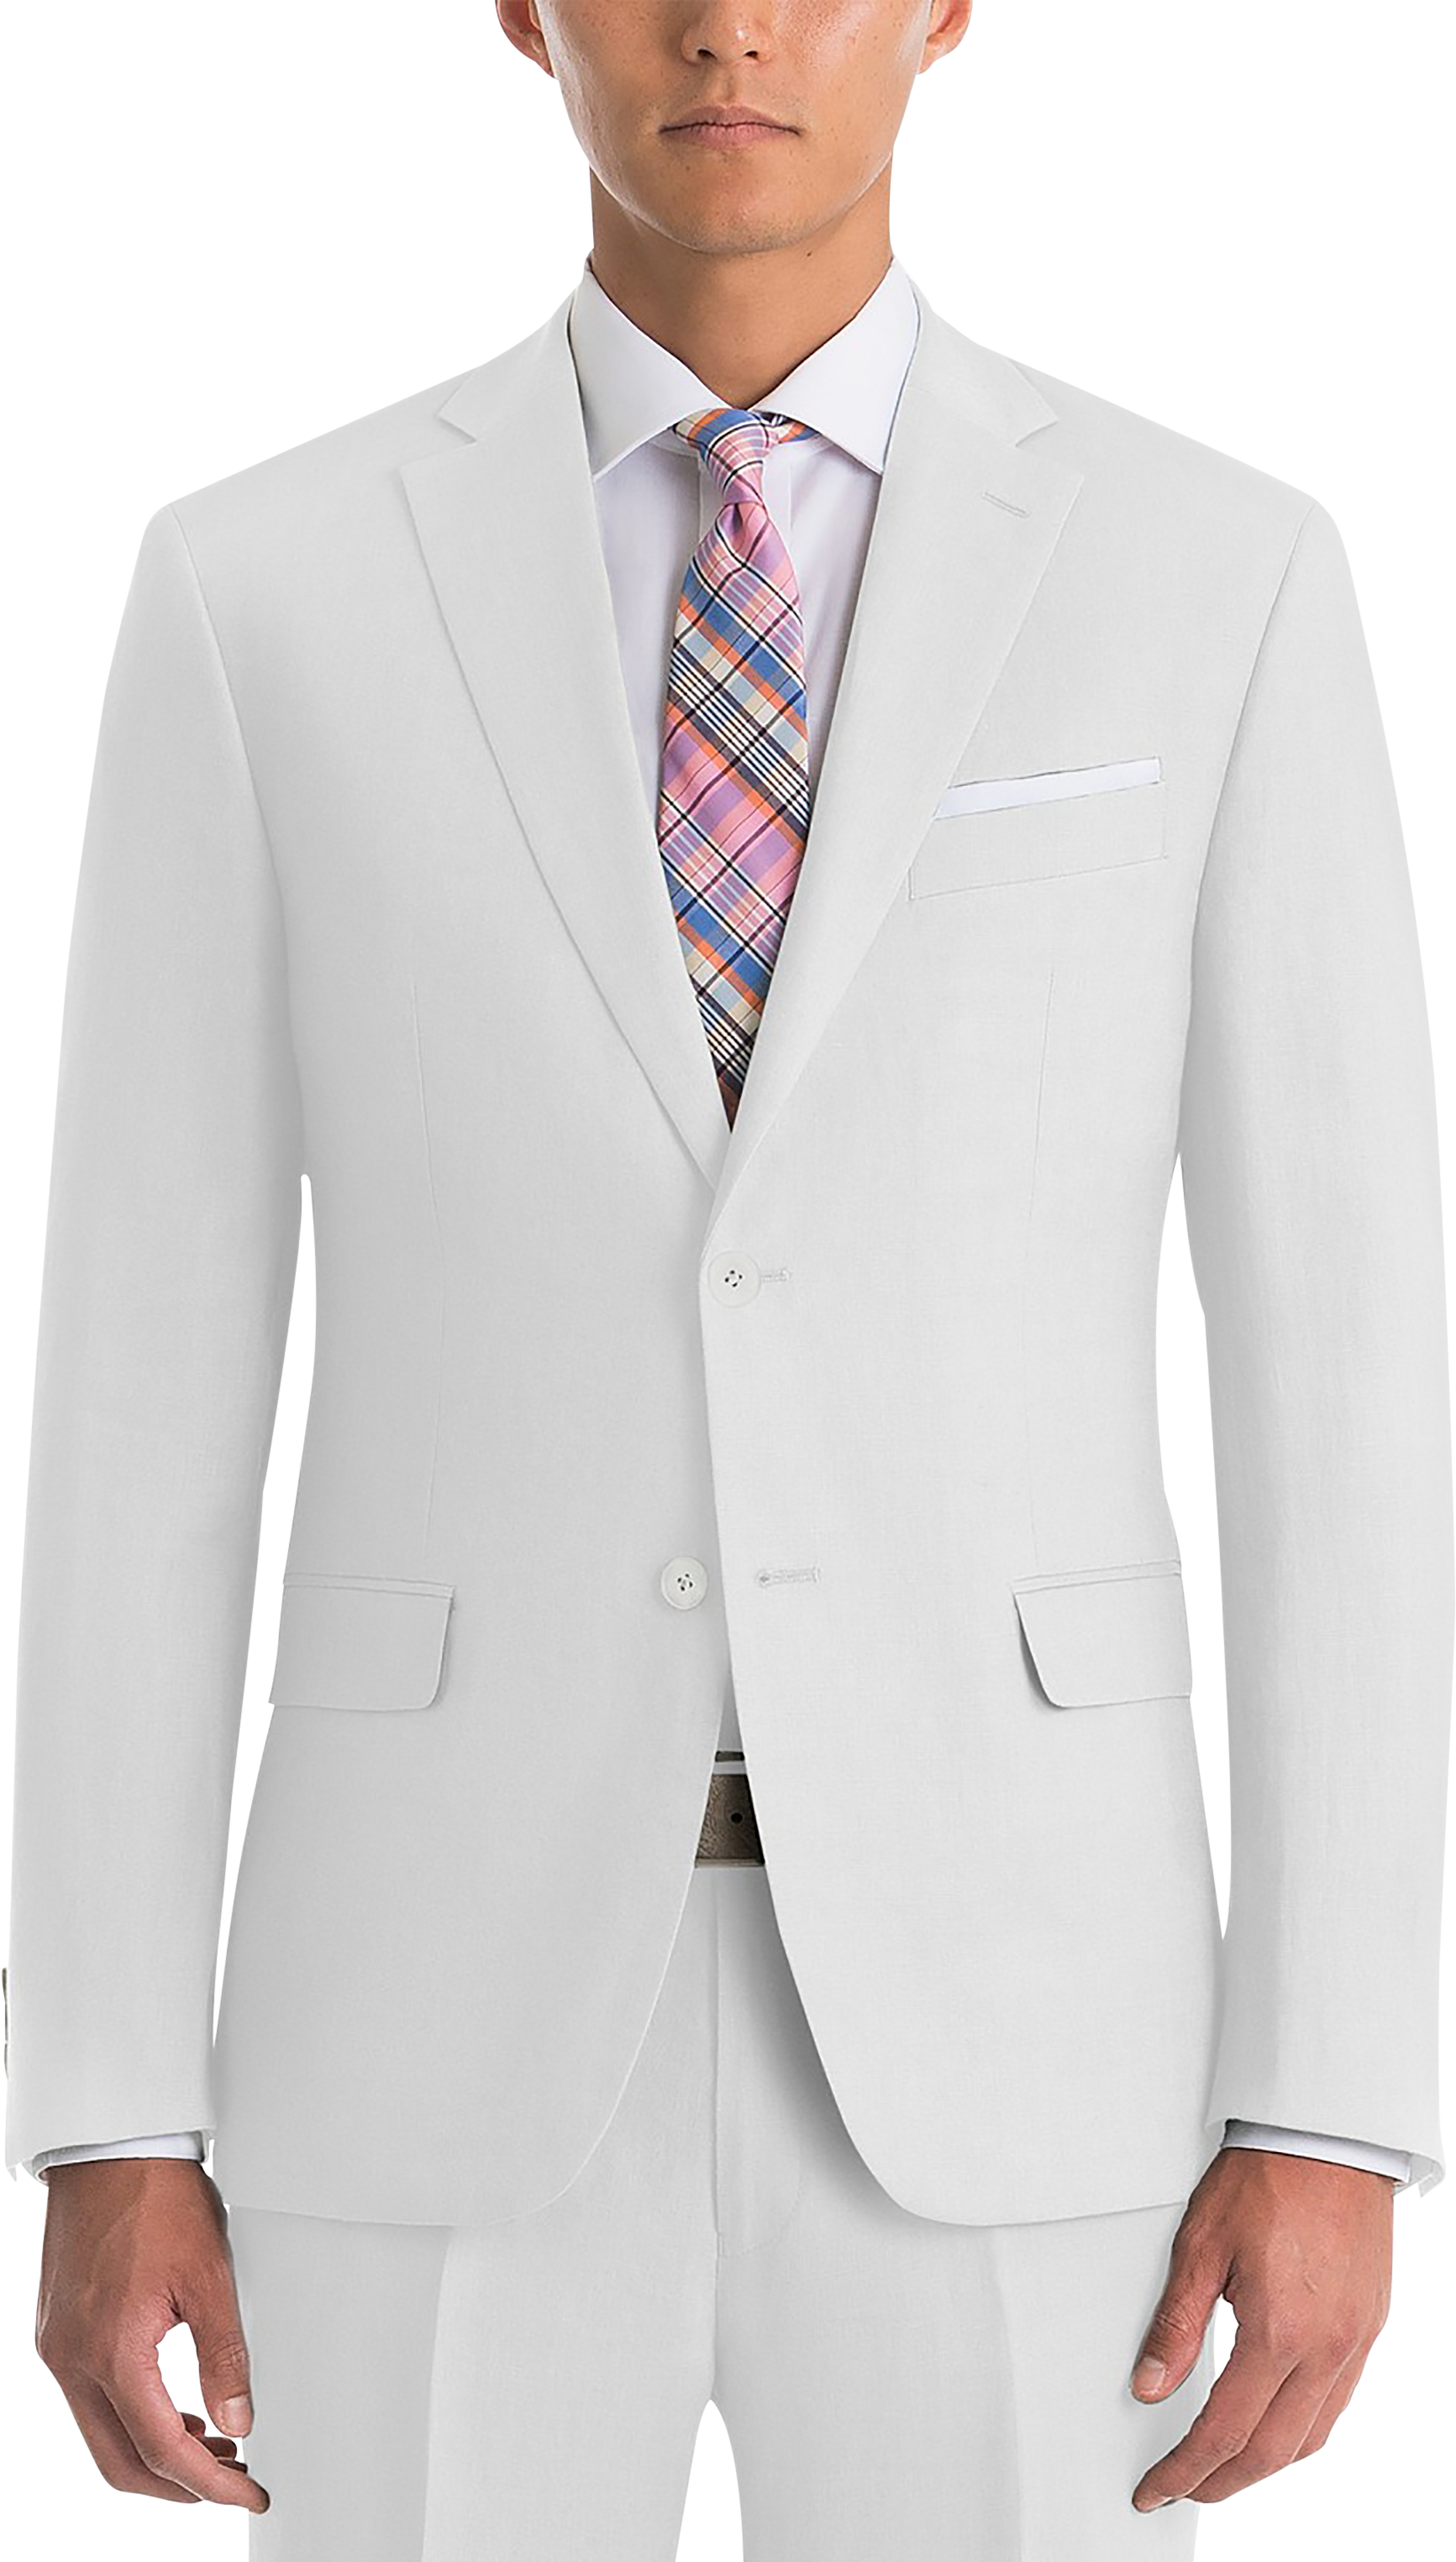 Lauren By Ralph Lauren White Classic Fit Linen Suit Separates - Men's Suits  | Men's Wearhouse